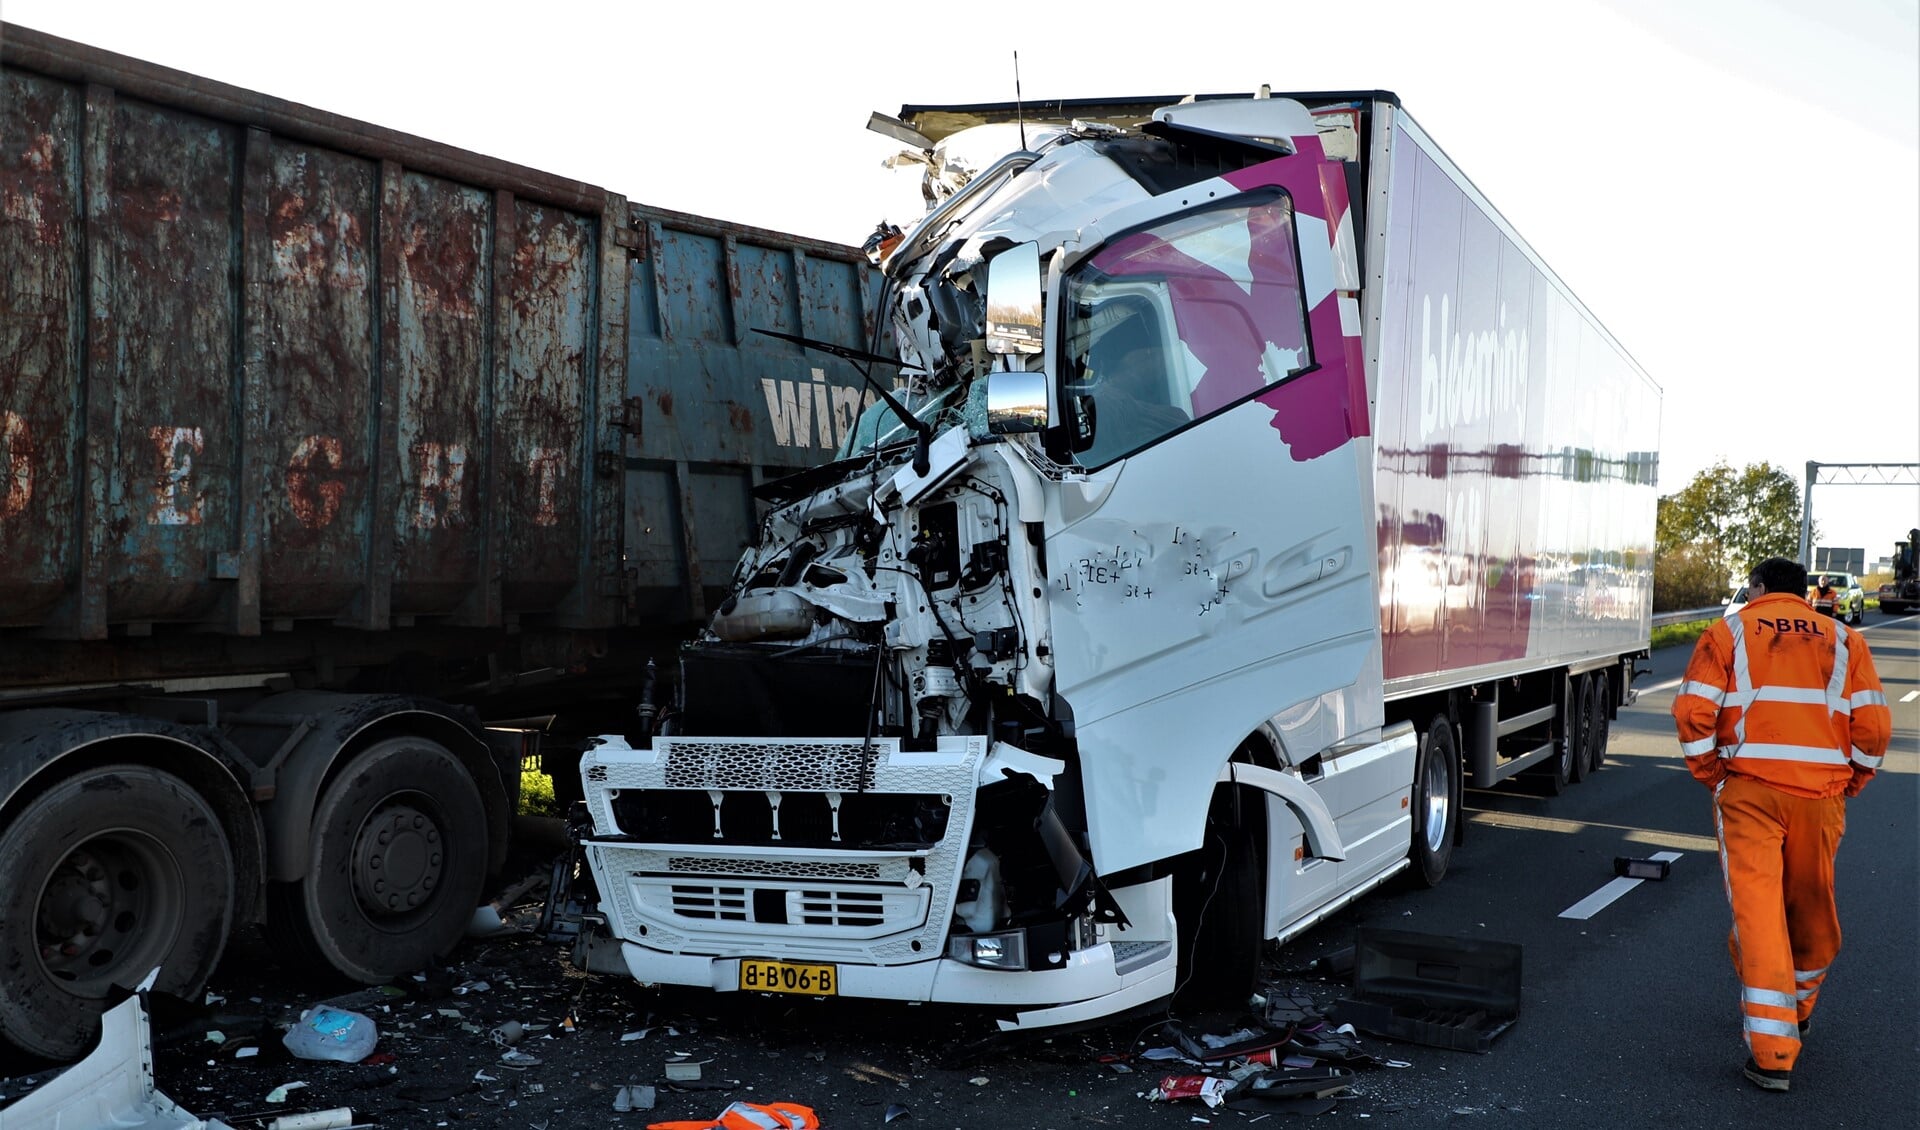 De cabine van de achterste vrachtwagen was totaal verwoest, maar de chauffeur leek slechts lichtgewond te zijn (foto: Rene Hendriks).